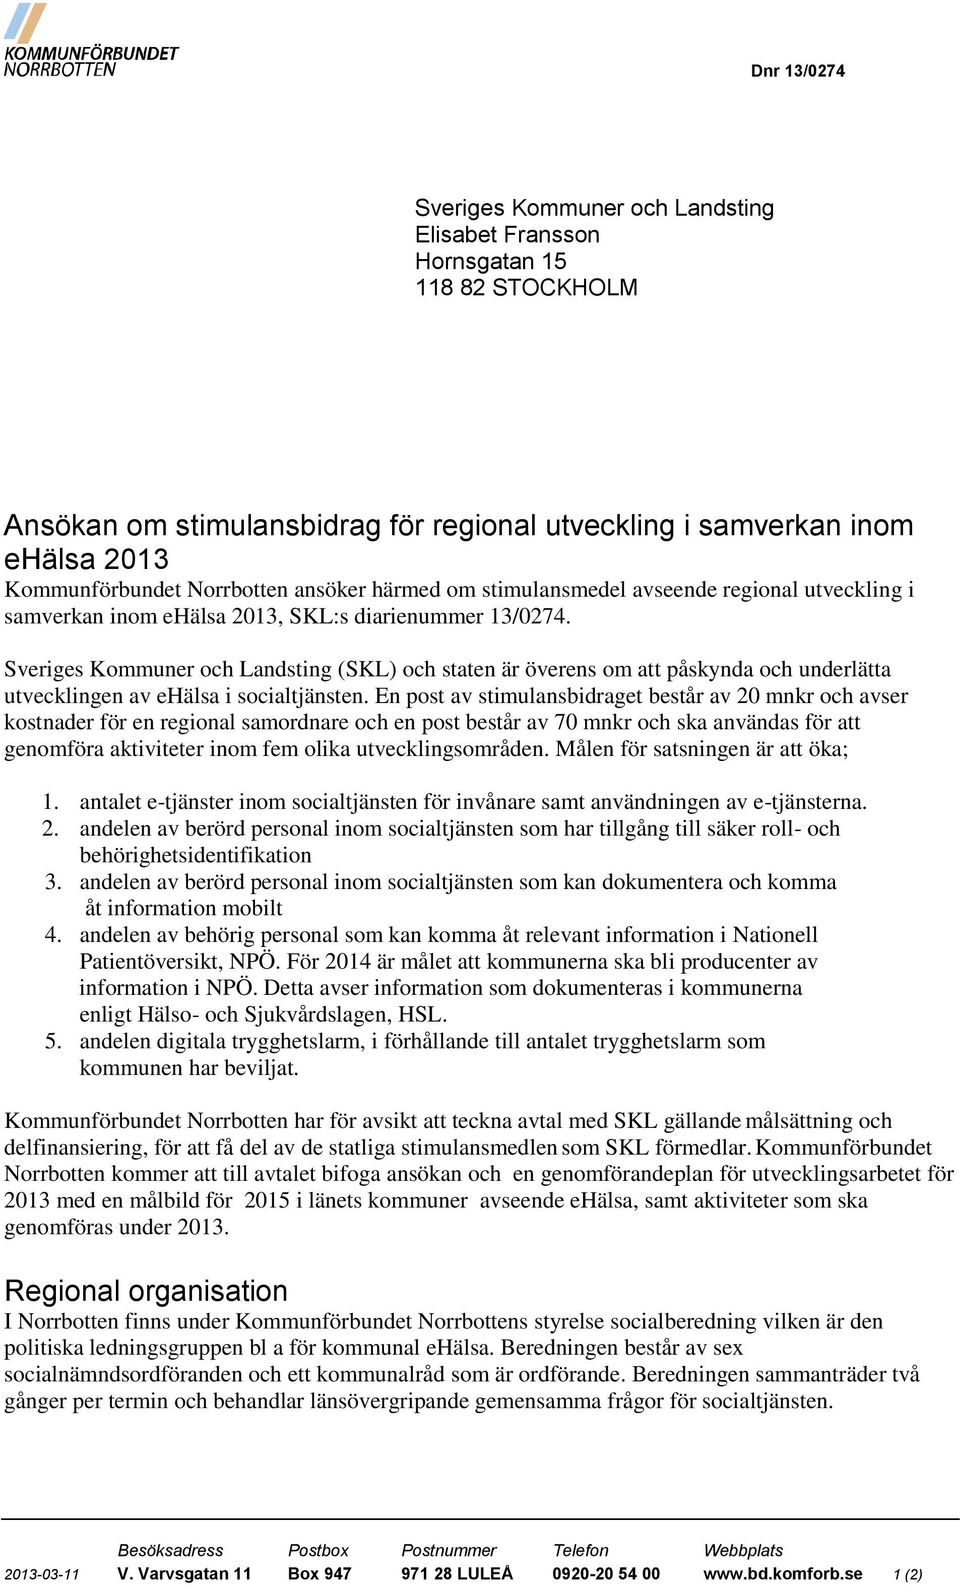 Sveriges Kommuner och Landsting (SKL) och staten är överens om att påskynda och underlätta utvecklingen av ehälsa i socialtjänsten.